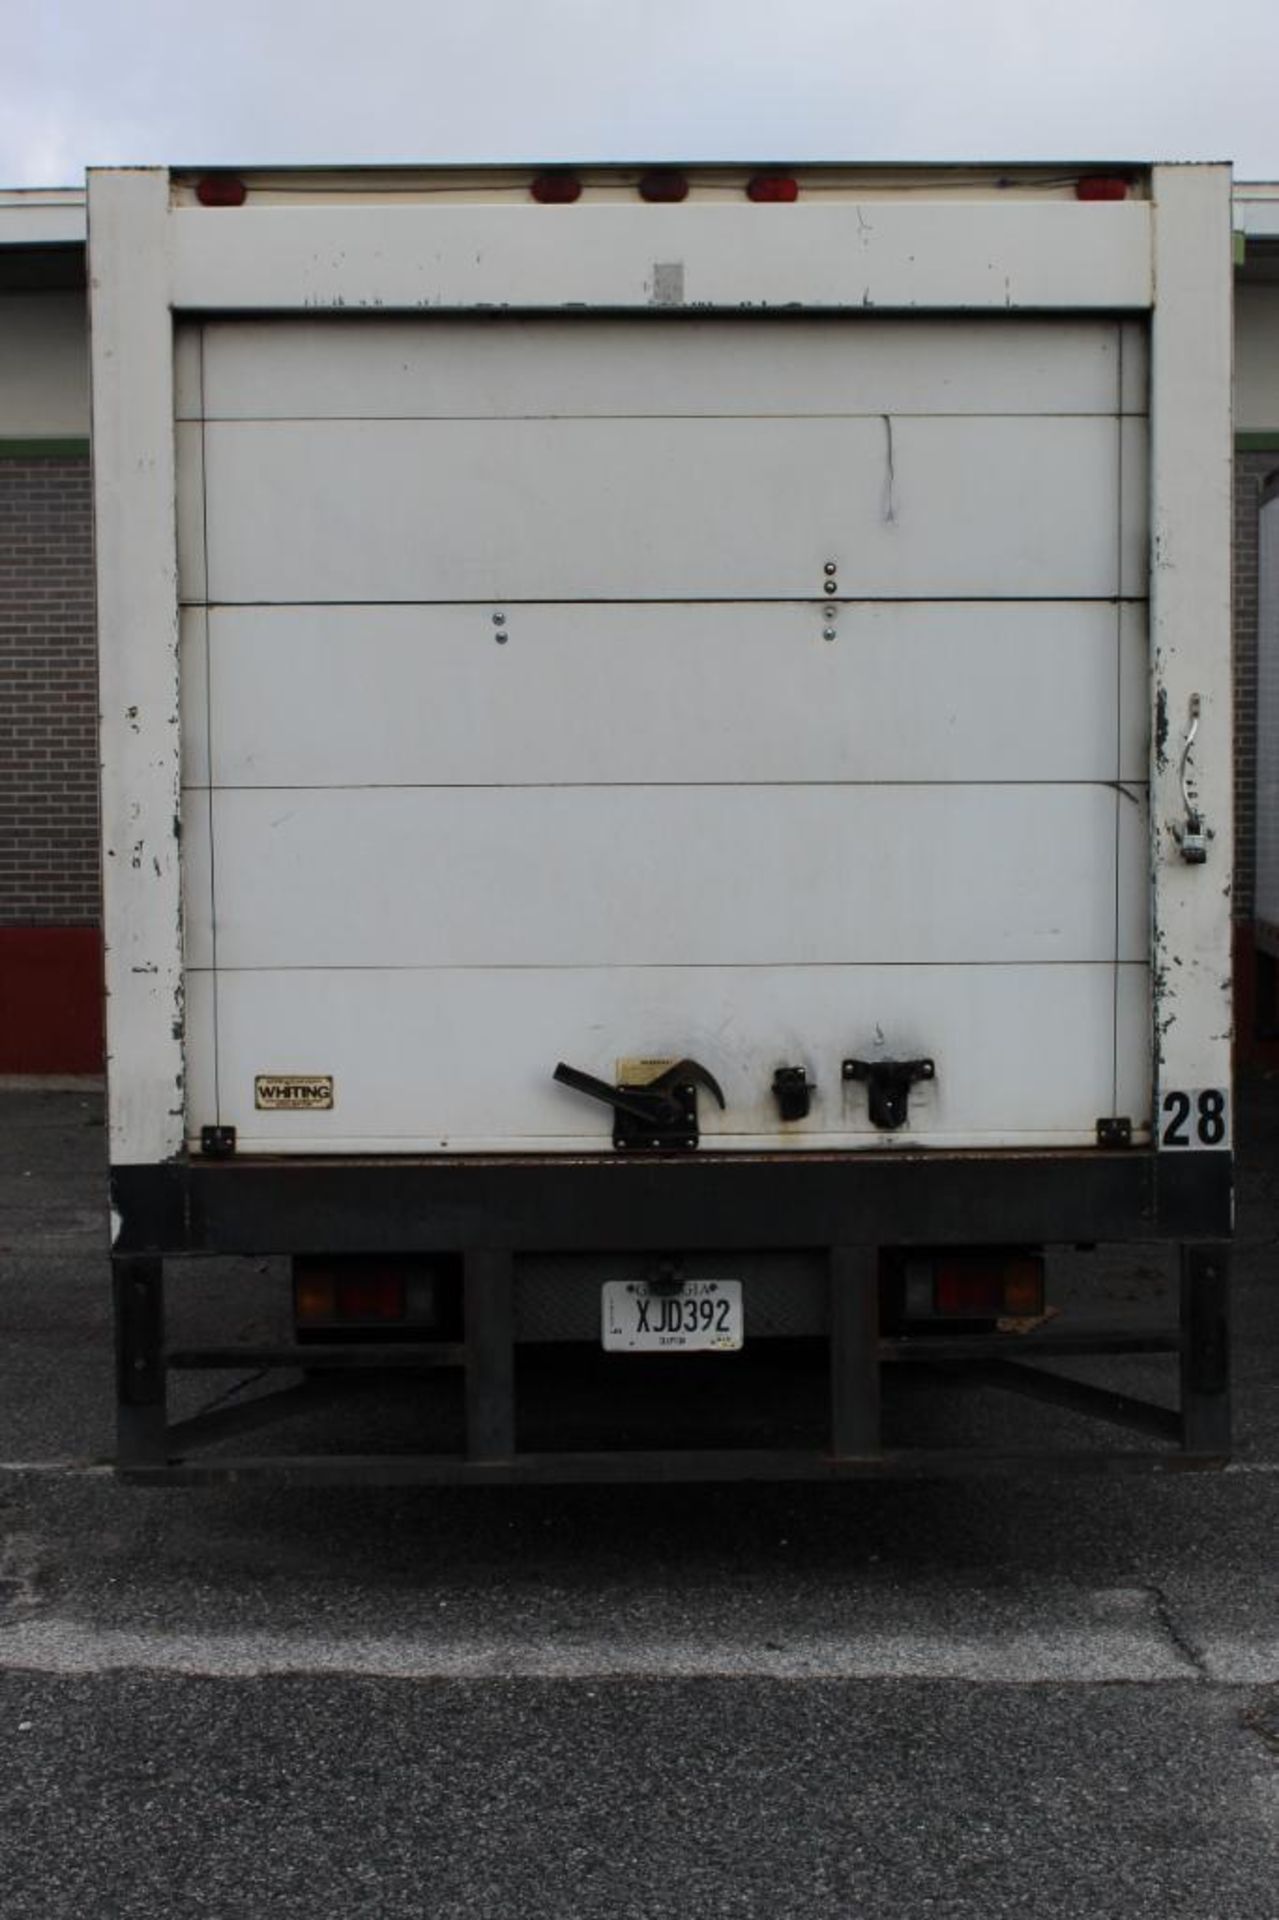 2017 Isuzu NQR Diesel Truck - Image 5 of 44